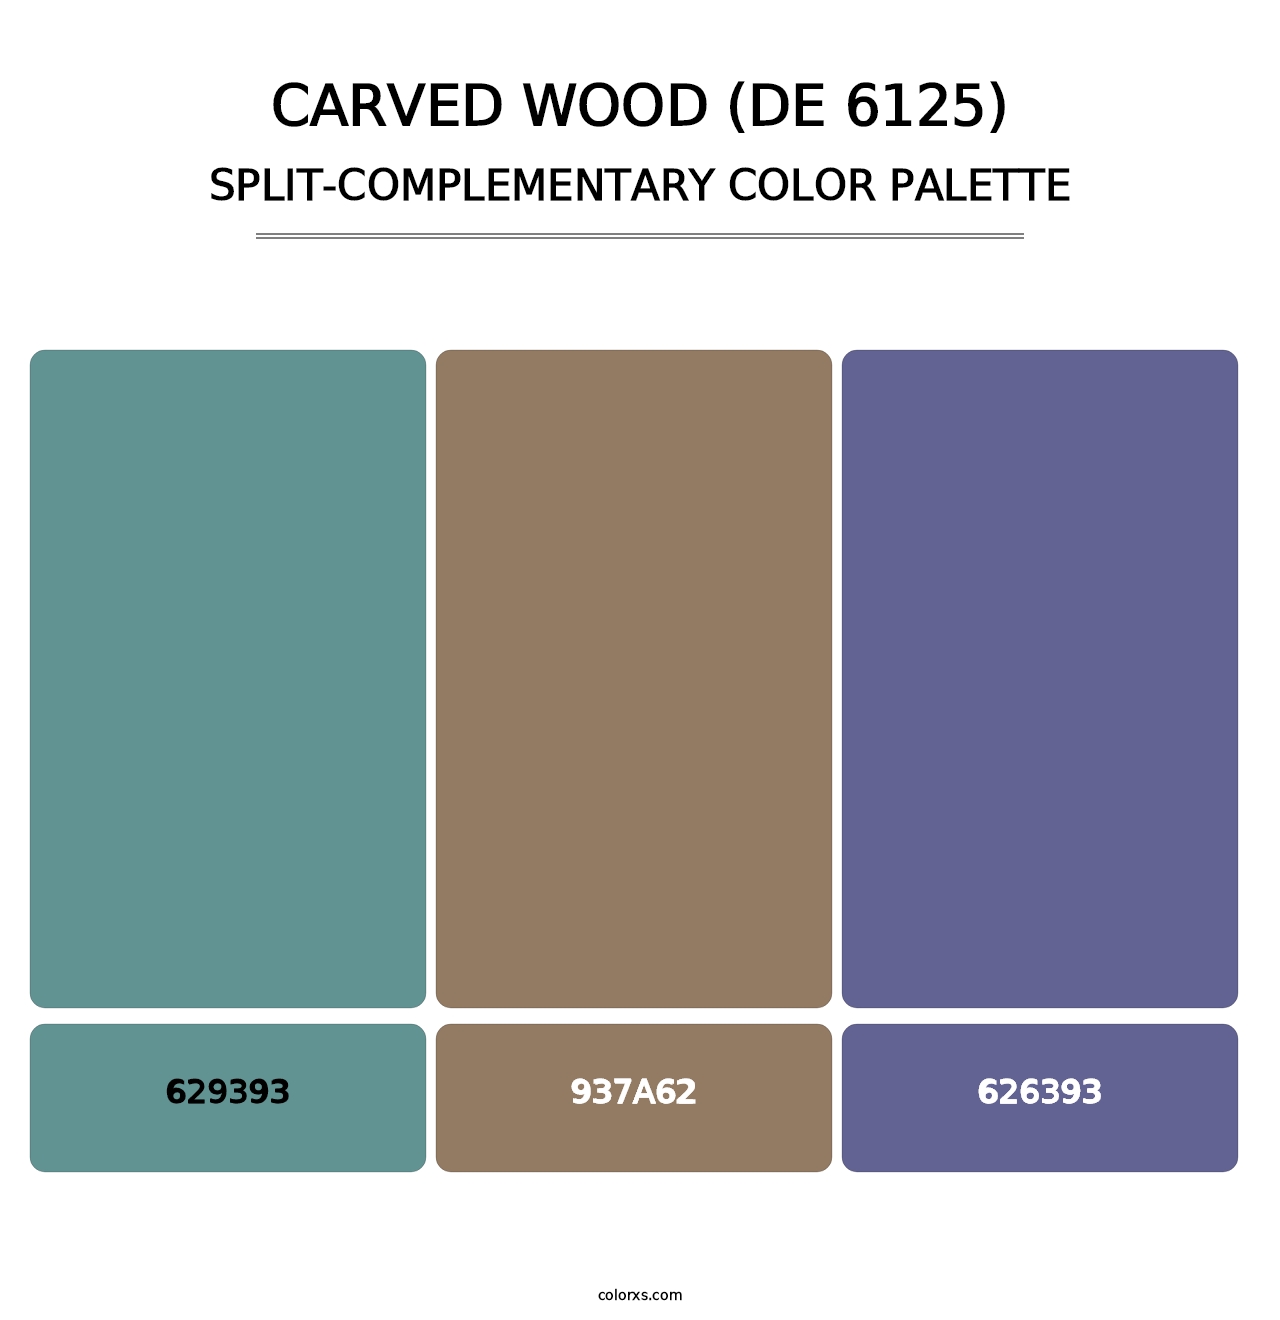 Carved Wood (DE 6125) - Split-Complementary Color Palette